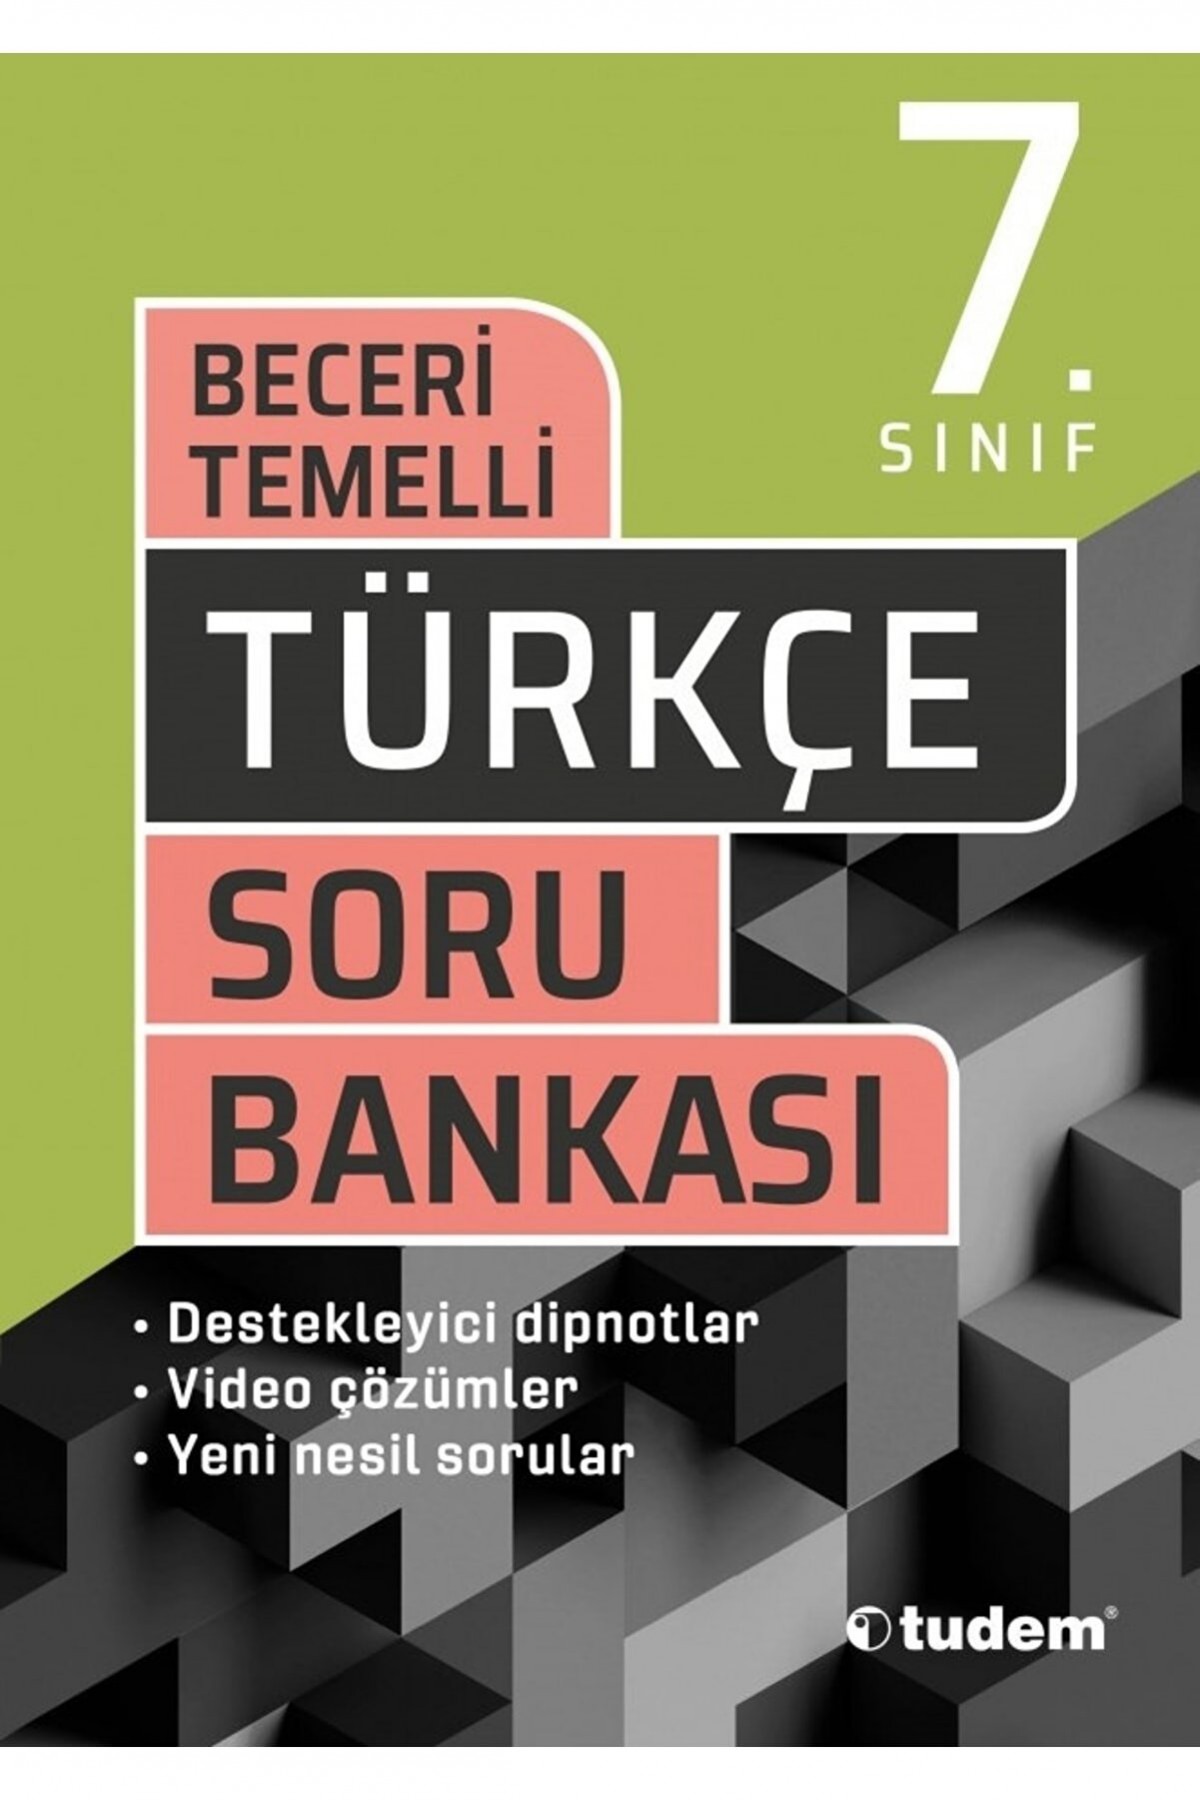 Tudem Yayınları 7. Sınıf Türkçe Beceri Temelli Soru Bankası